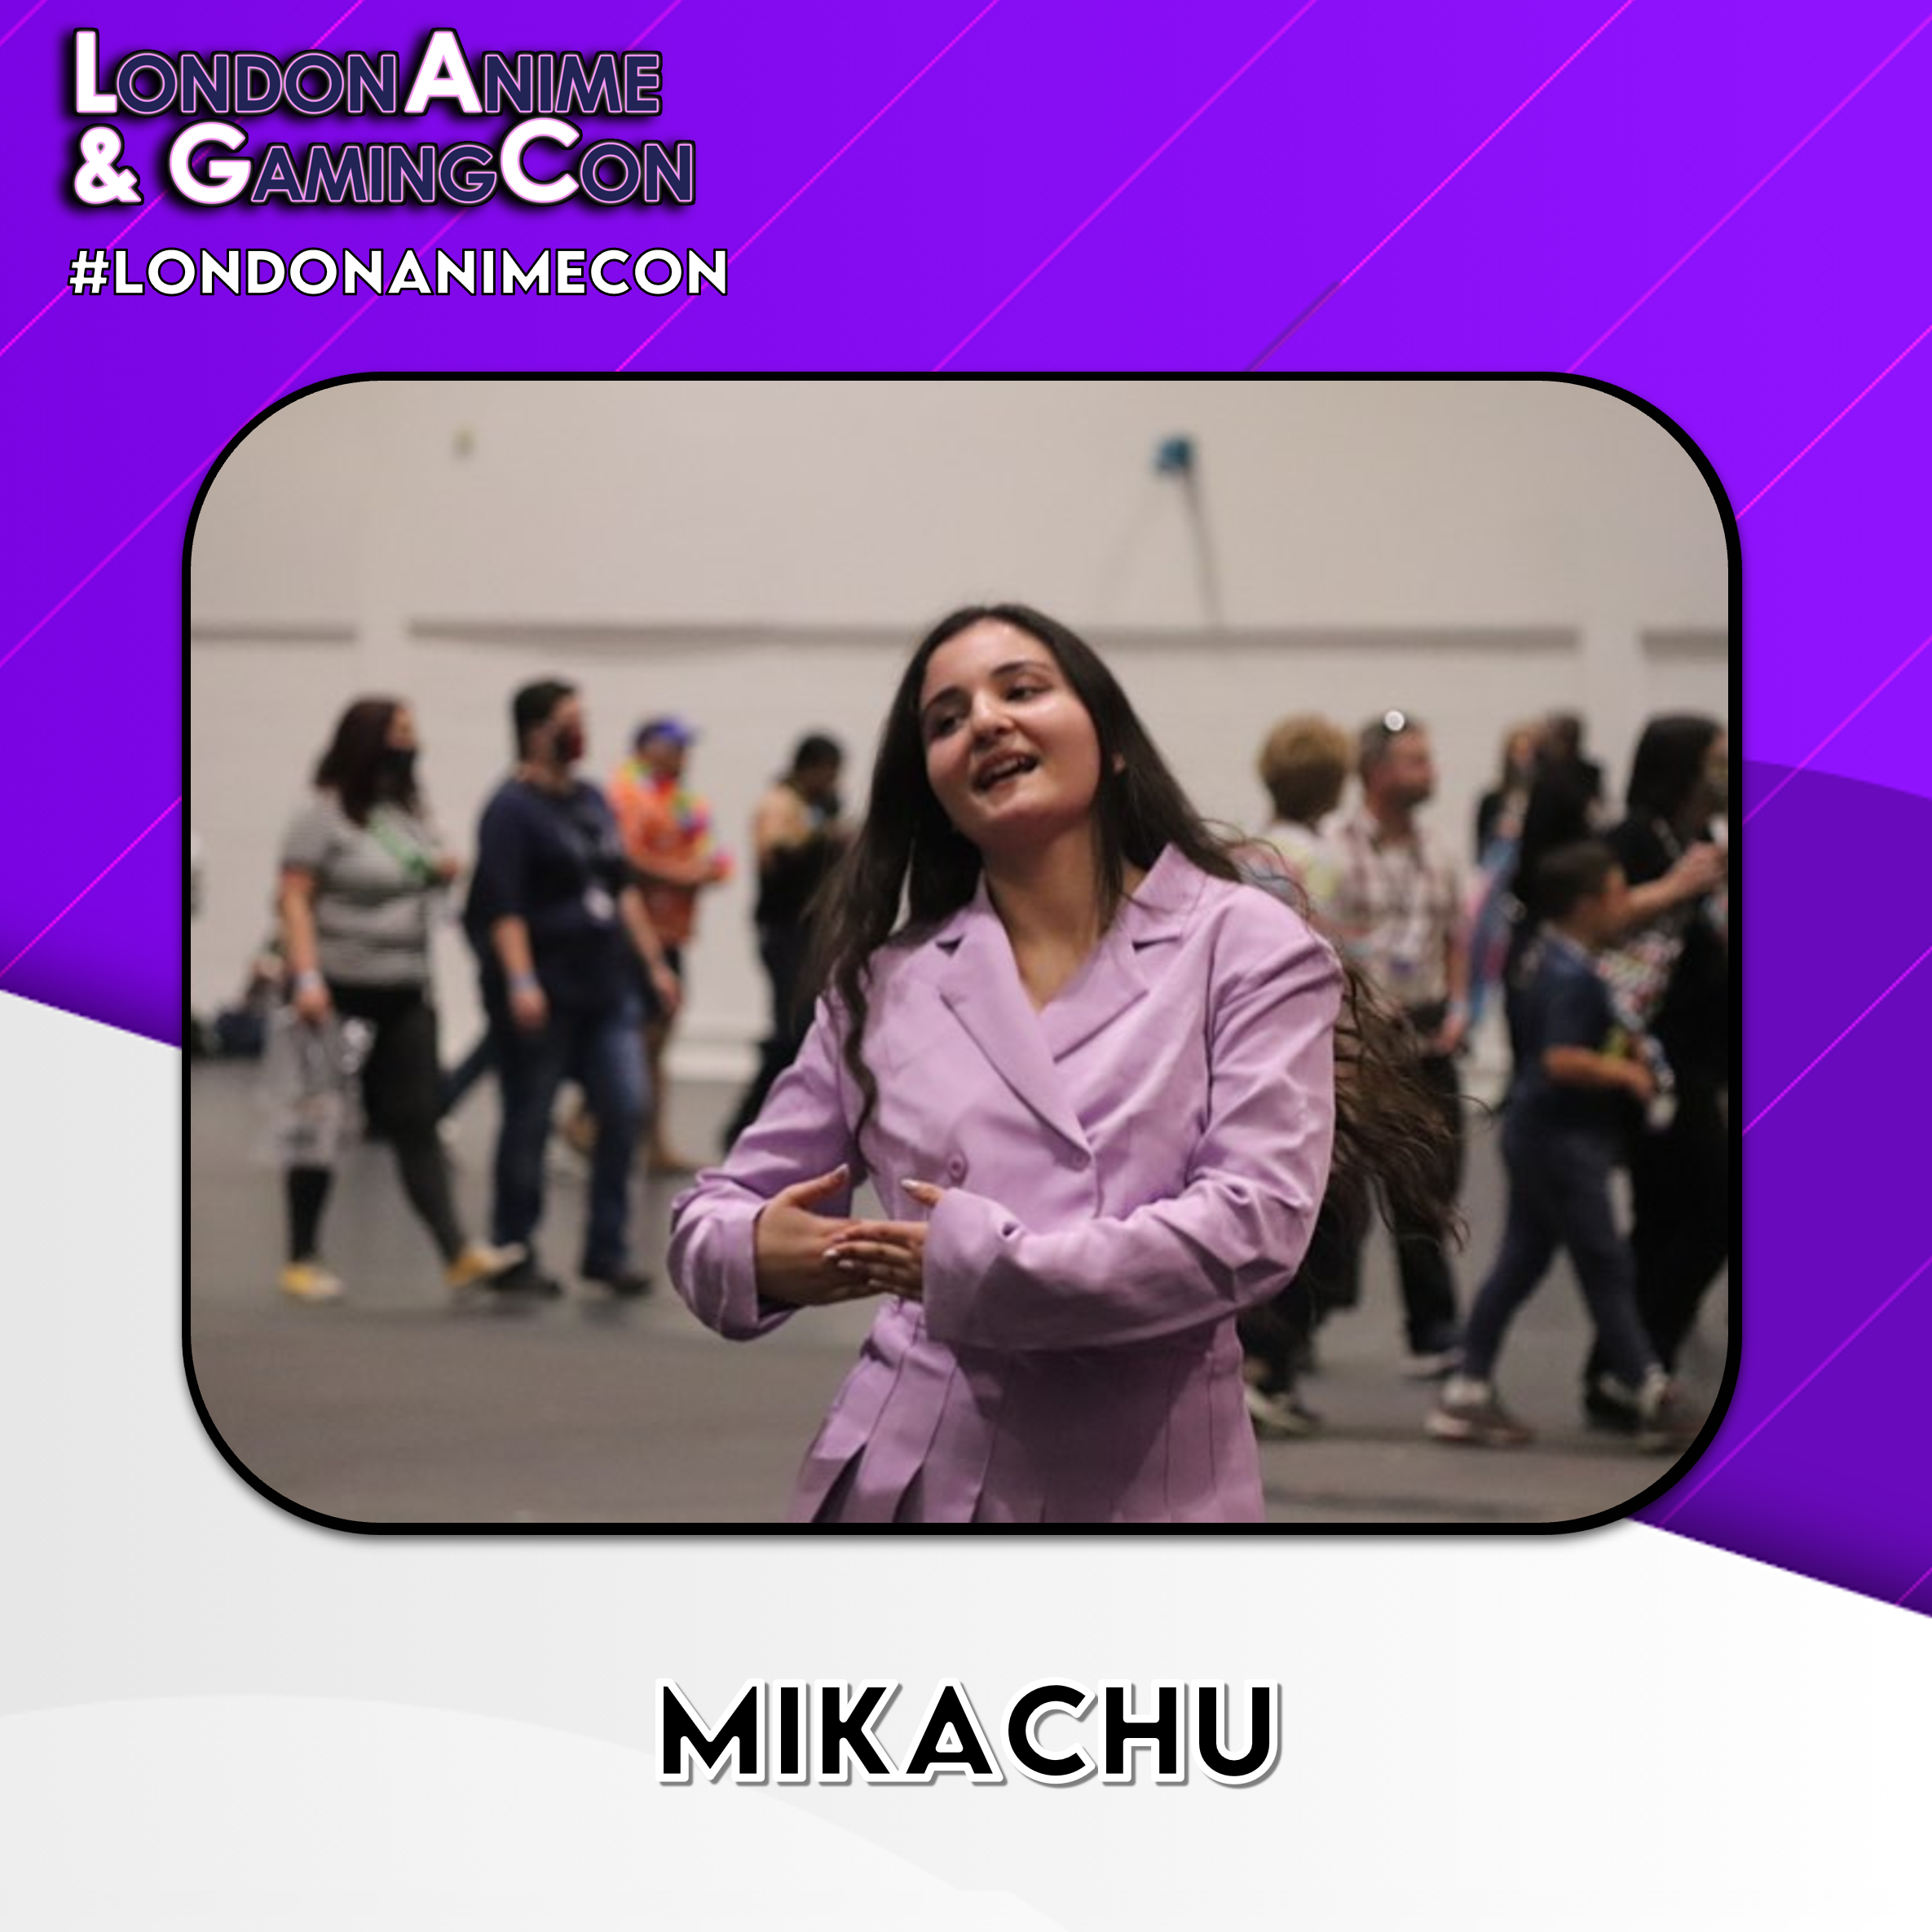 Mikachu